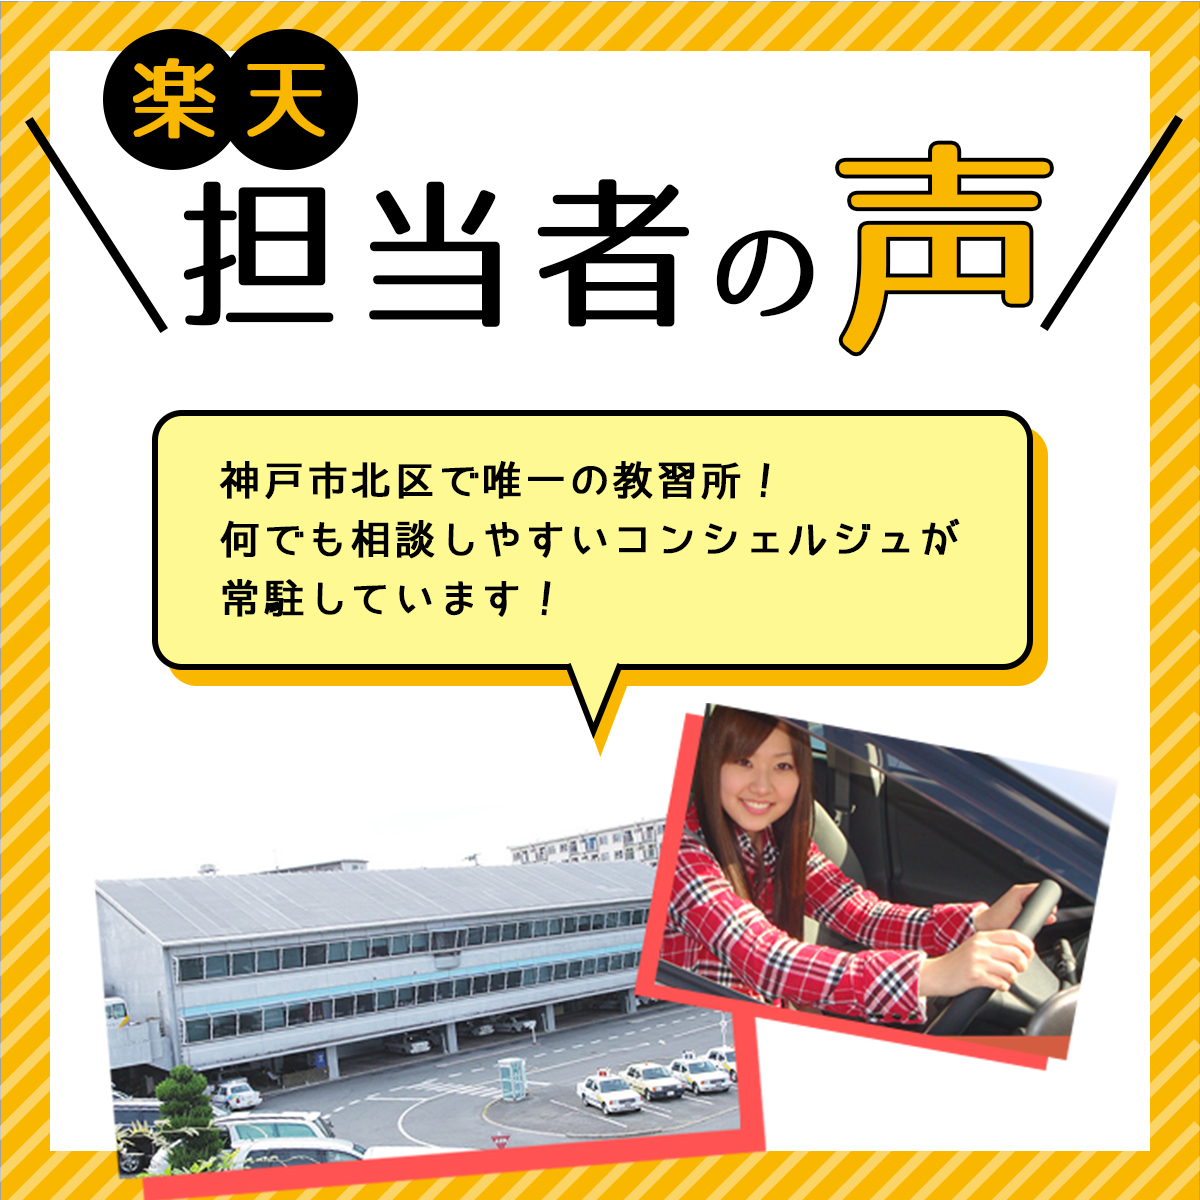 免許 兵庫県神戸市 普通車atコース 学生料金 免許なし 原付免許所持対象 神戸ドライヴィングスクール 大きな割引 売切れ続出中 最大の割引 最大の割引人気殺到